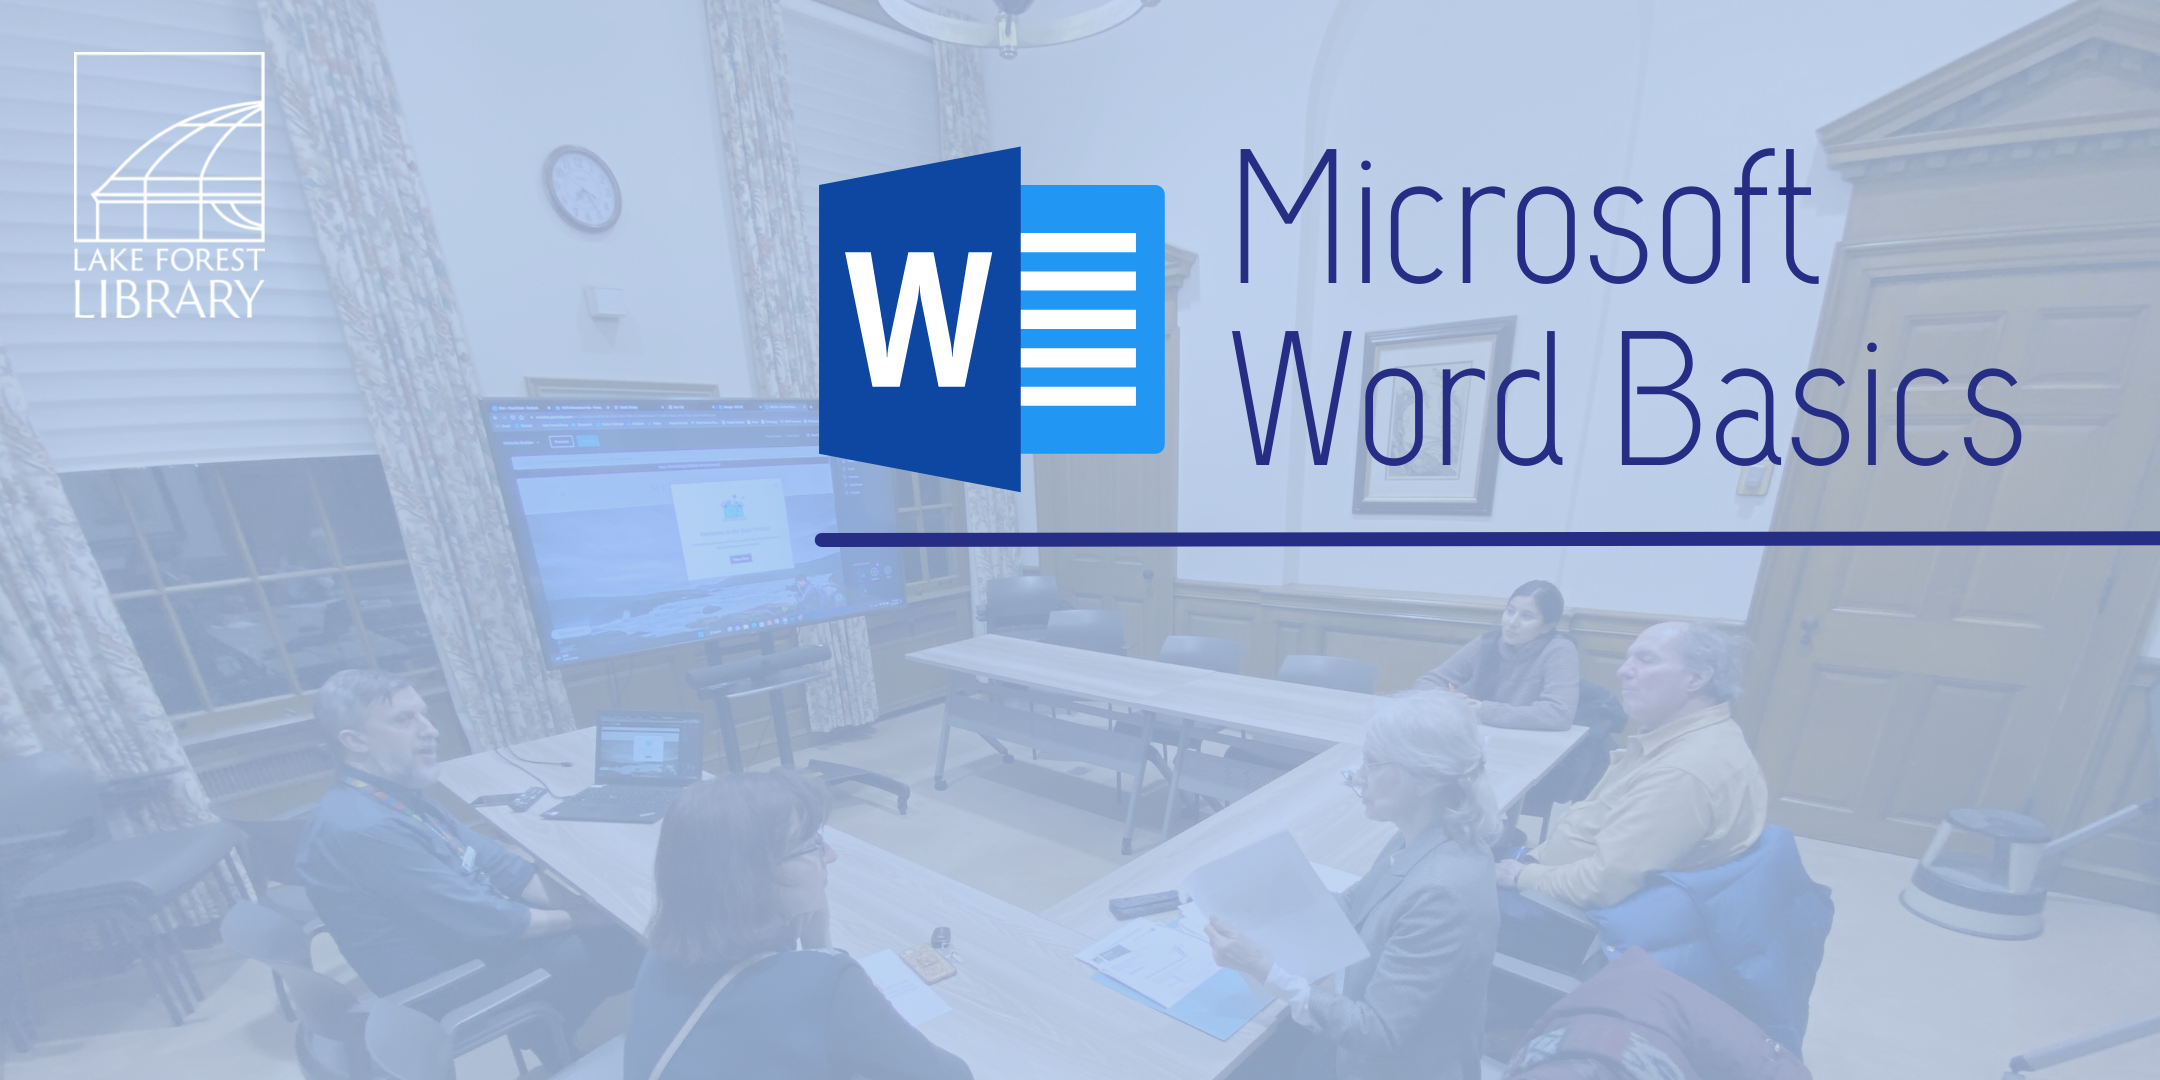 image of "Microsoft Word Basics"